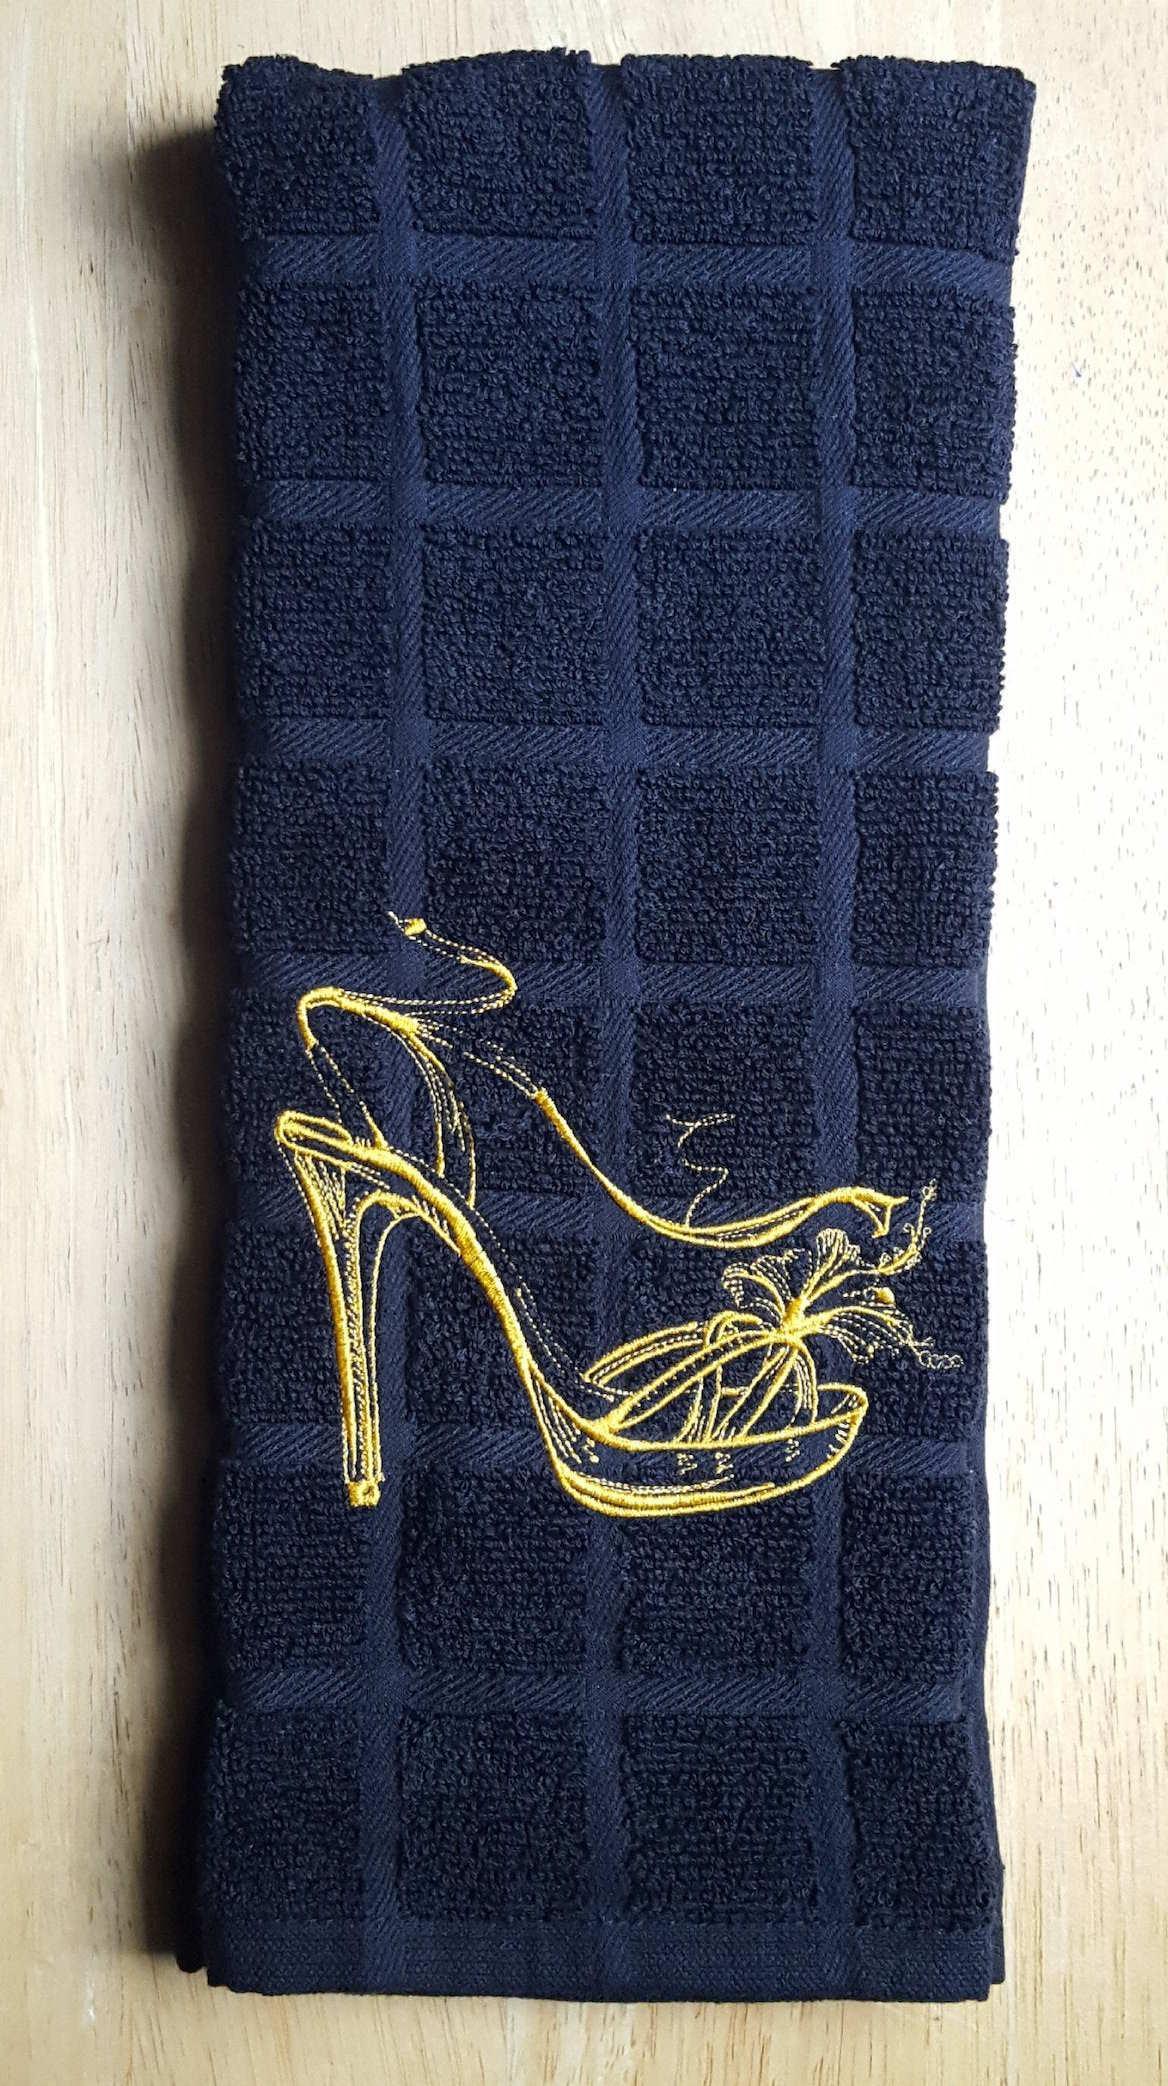 Shoe 1 From Patrizia Silingardi - Embroidery Kits - Kits - Casa Cenina